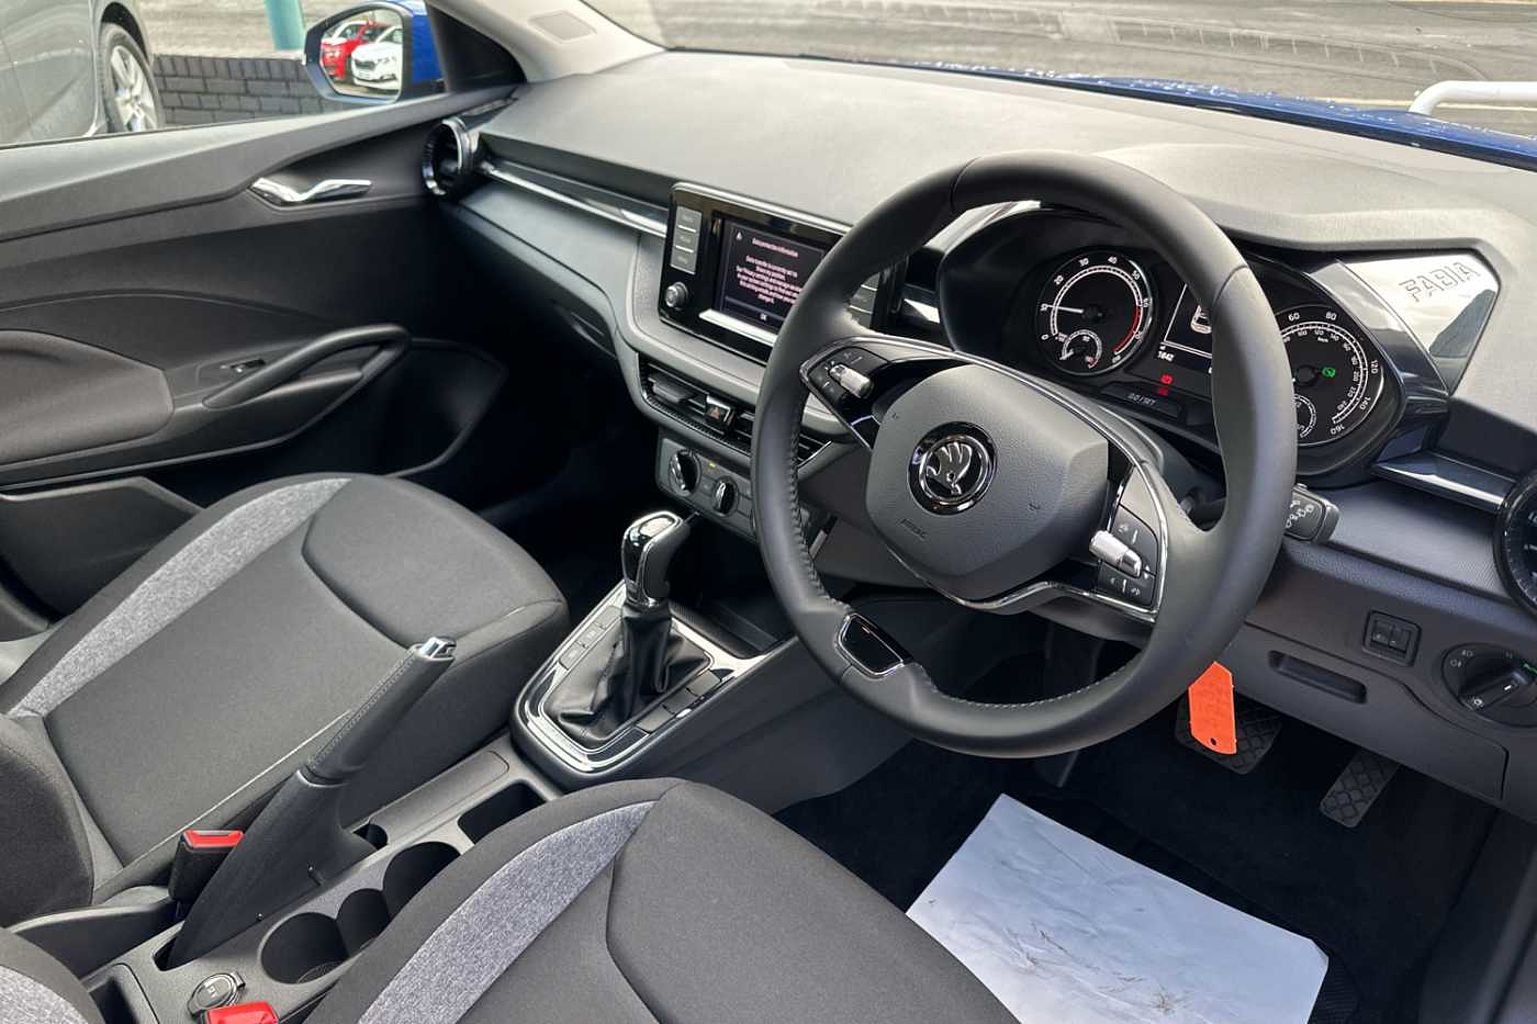 SKODA Fabia 1.0 TSI (109ps) SE Comfort DSG 5Dr Hatchback